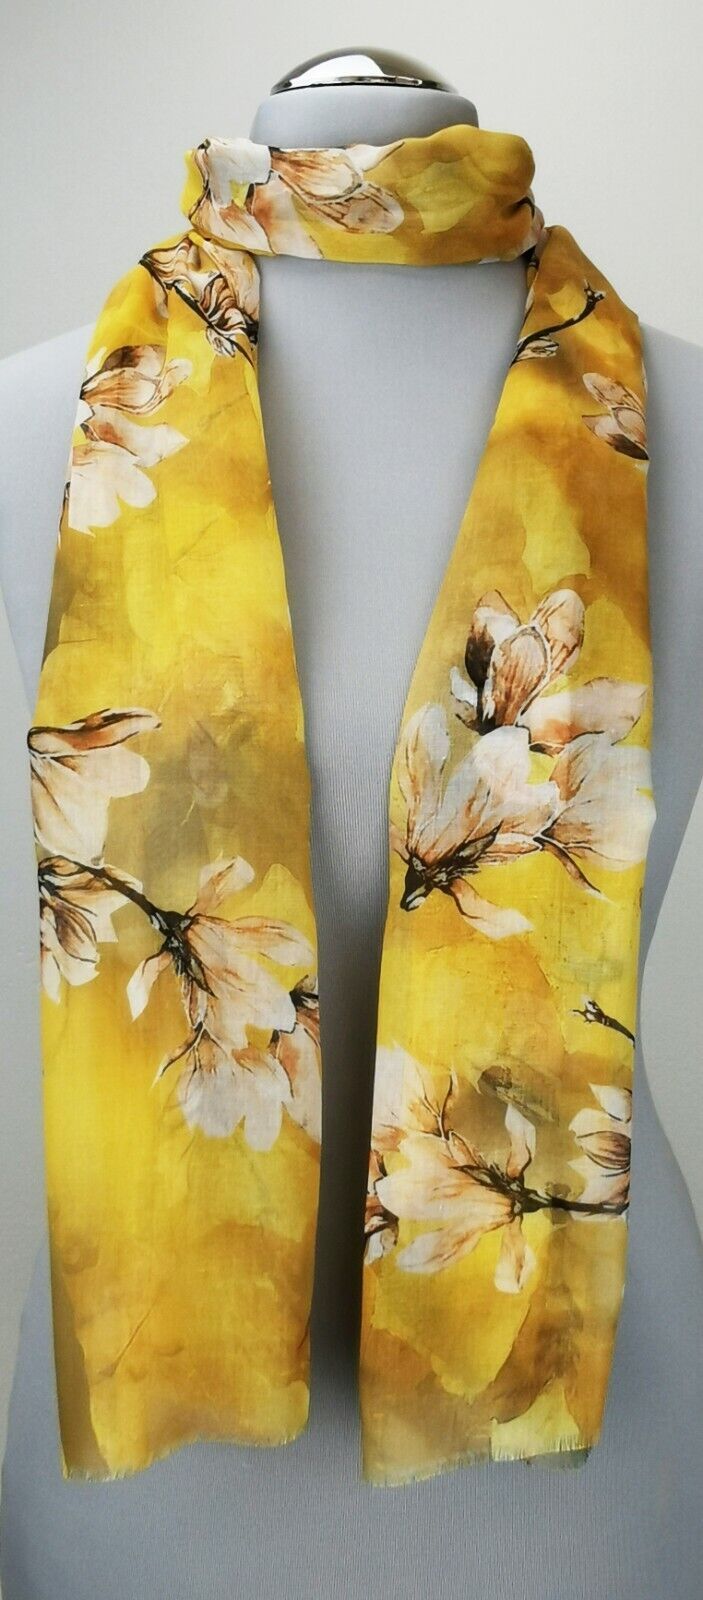  - Leichter Damen-Schal, neu, 170 x 50 cm, gelb mit Blumenmuster, # 2232 